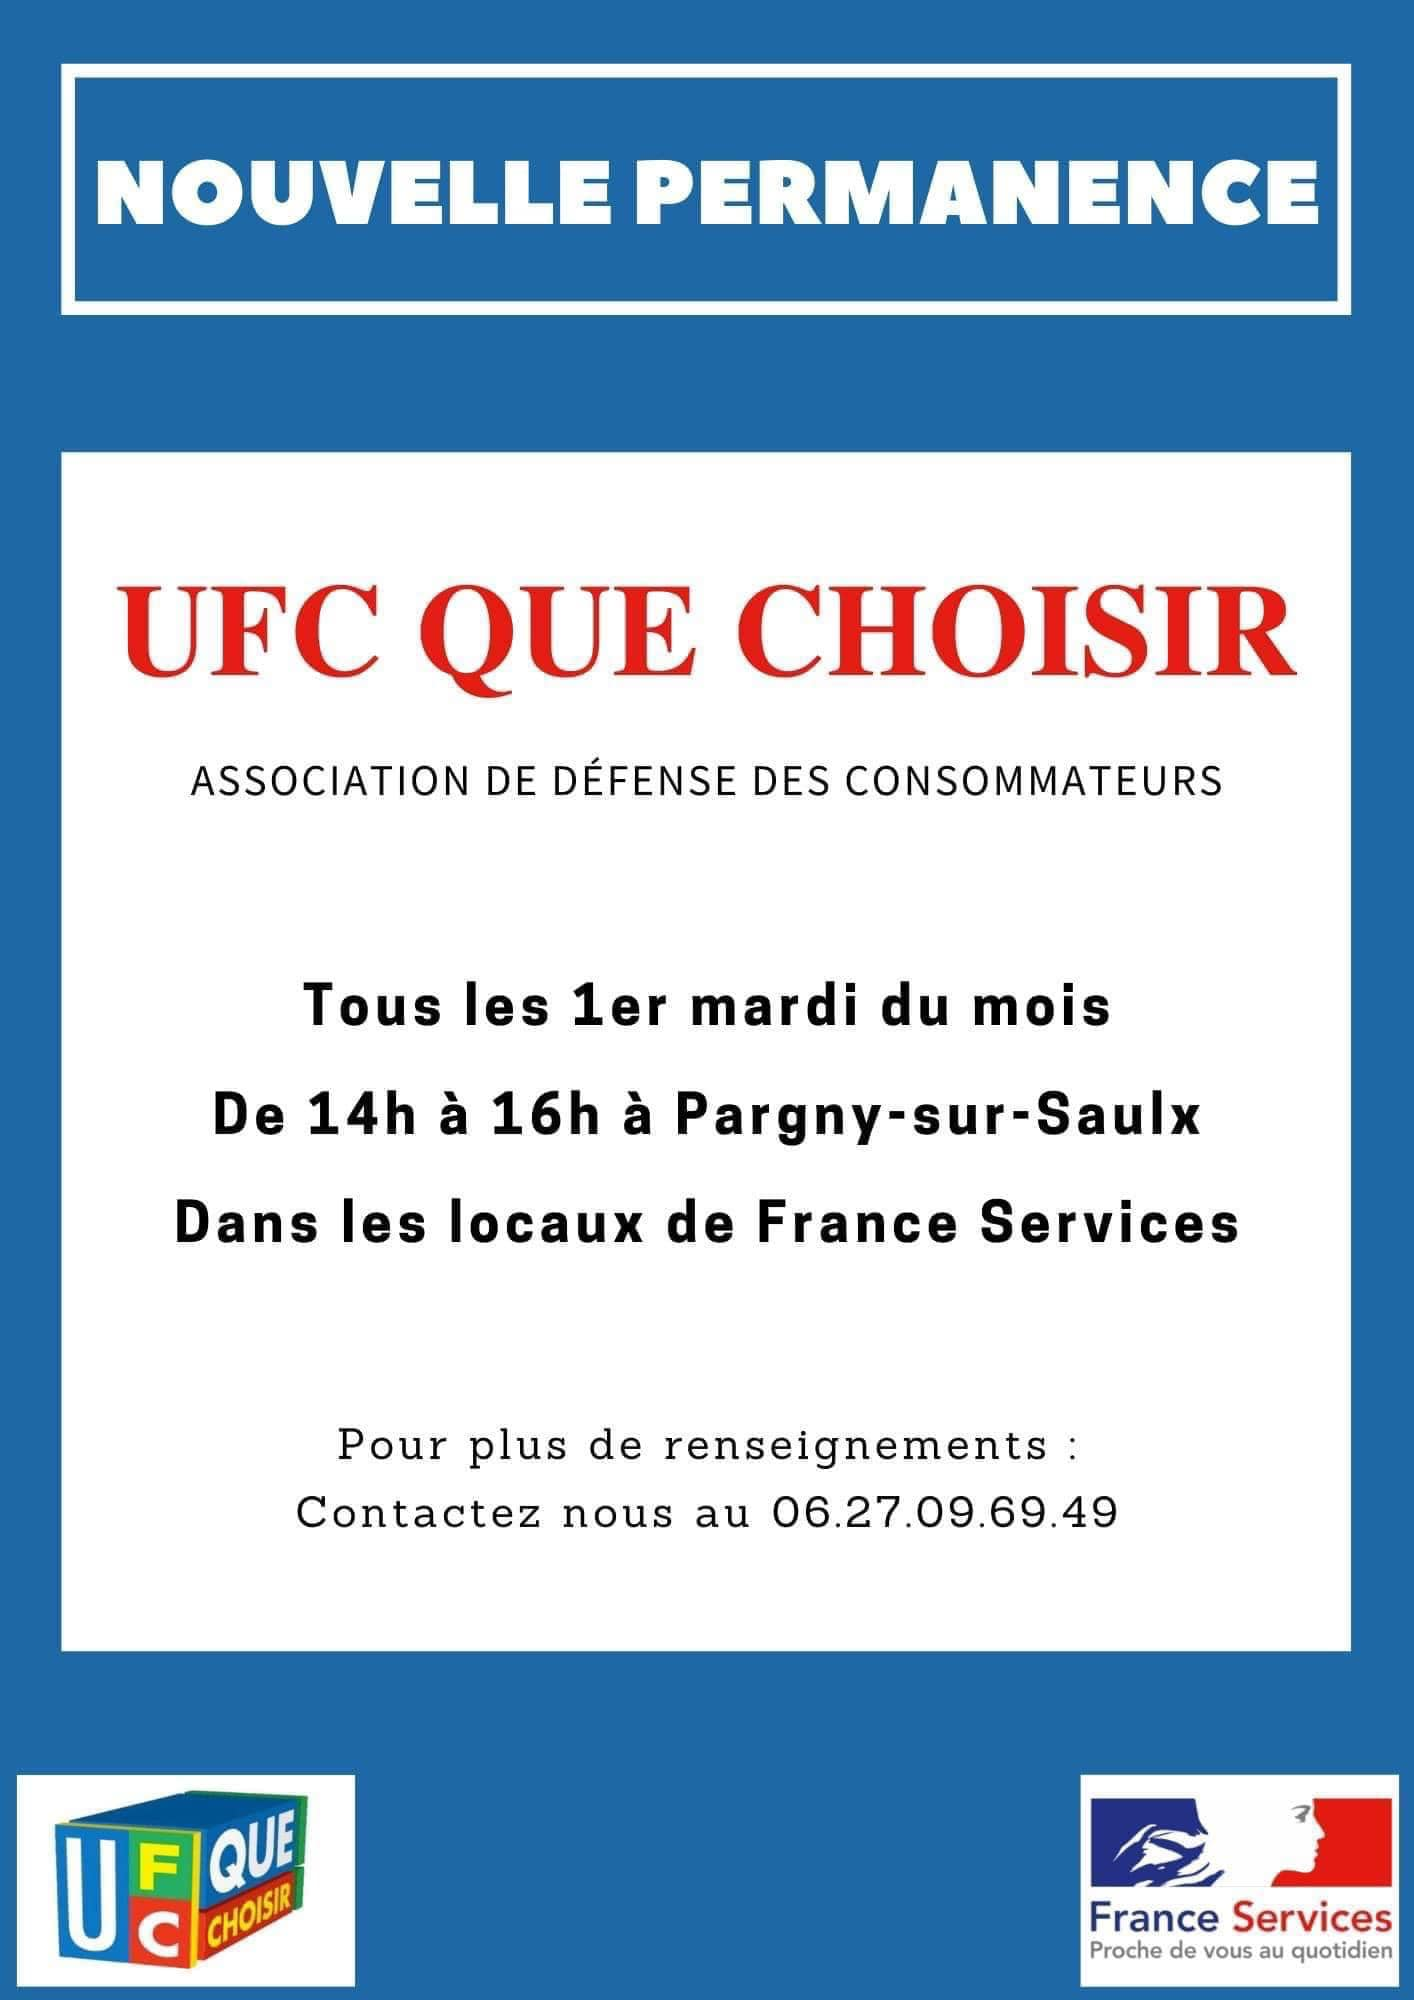 L’association UFC QUE CHOISIR sera dans les locaux de France Services à Pargny sur Saulx  tous les premiers mardi du mois